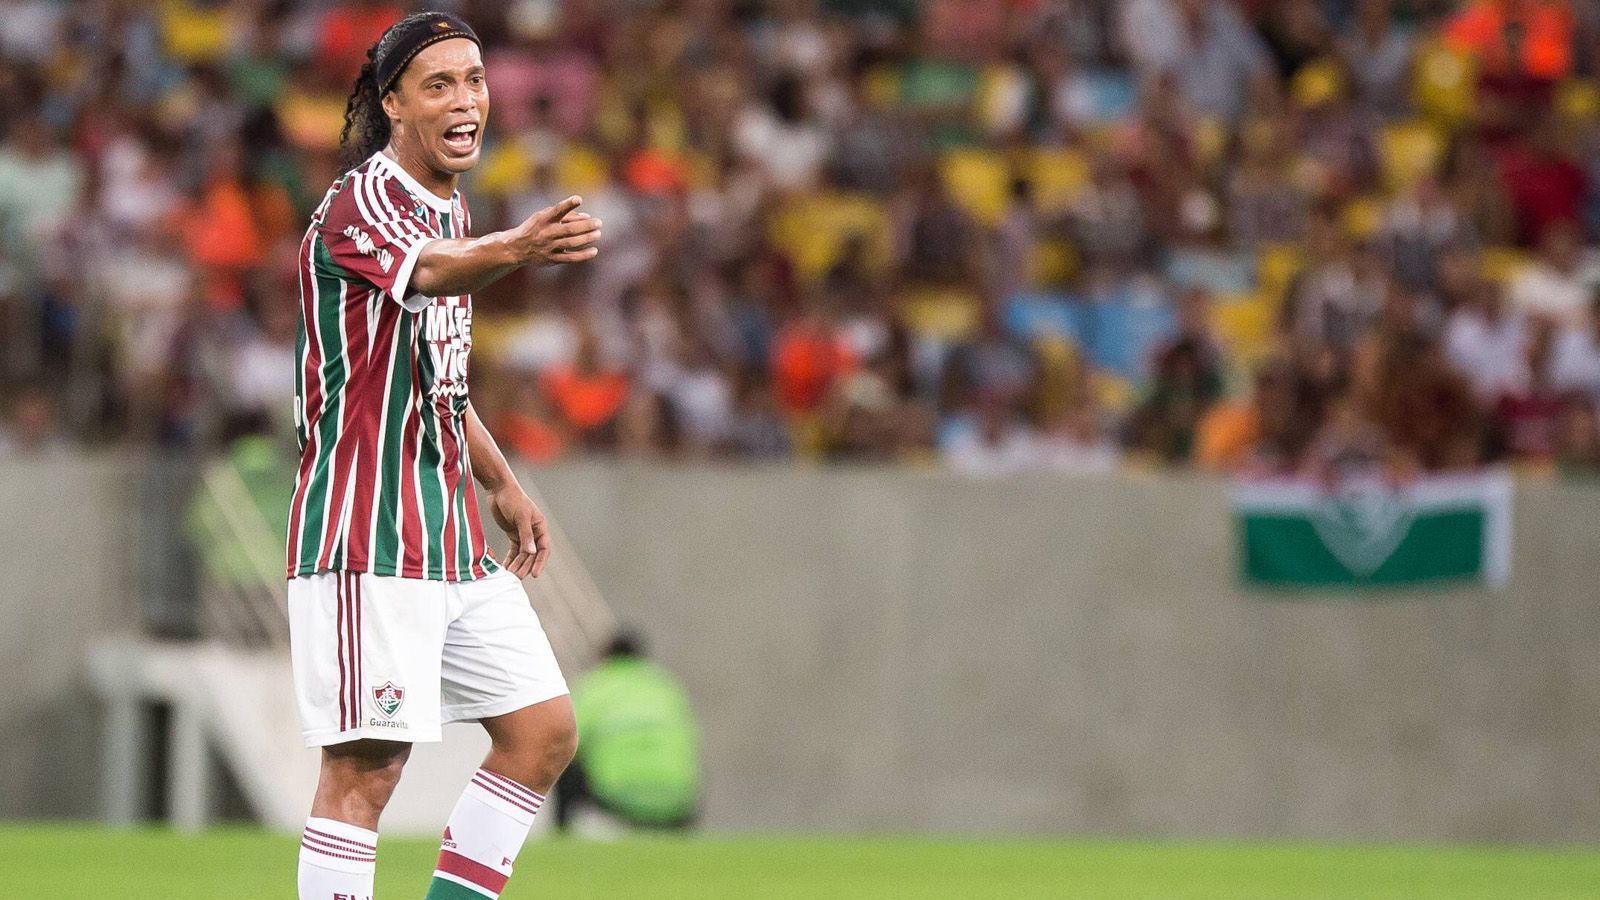 
                <strong>Ronaldinho: Viele Partys, wenig Disziplin     </strong><br>
                2004 sowie 2005 war Ronaldinho noch der FIFA-Weltfußballer des Jahres. Nach einer enttäuschenden Weltmeisterschaft 2006 sank allerdings sein Stern. Beim FC Barcelona fiel er danach wegen Disziplinlosigkeiten auf. Zudem wurden ihm lange Partynächte nachgesagt. Auch beim AC Mailand, für die er von 2008 bis 2010 spielte, konnte er an seine früheren Leistungen nicht anknüpfen. Bei Flamengo Rio de Janeiro setzten sich die Disziplinlosigkeiten fort. Zuletzt spielte er 2016 Futsal in Indien. 2020 saß er in einem Gefängnis von Paraguay, weil er mit einem gefälschten Pass reiste. 
              